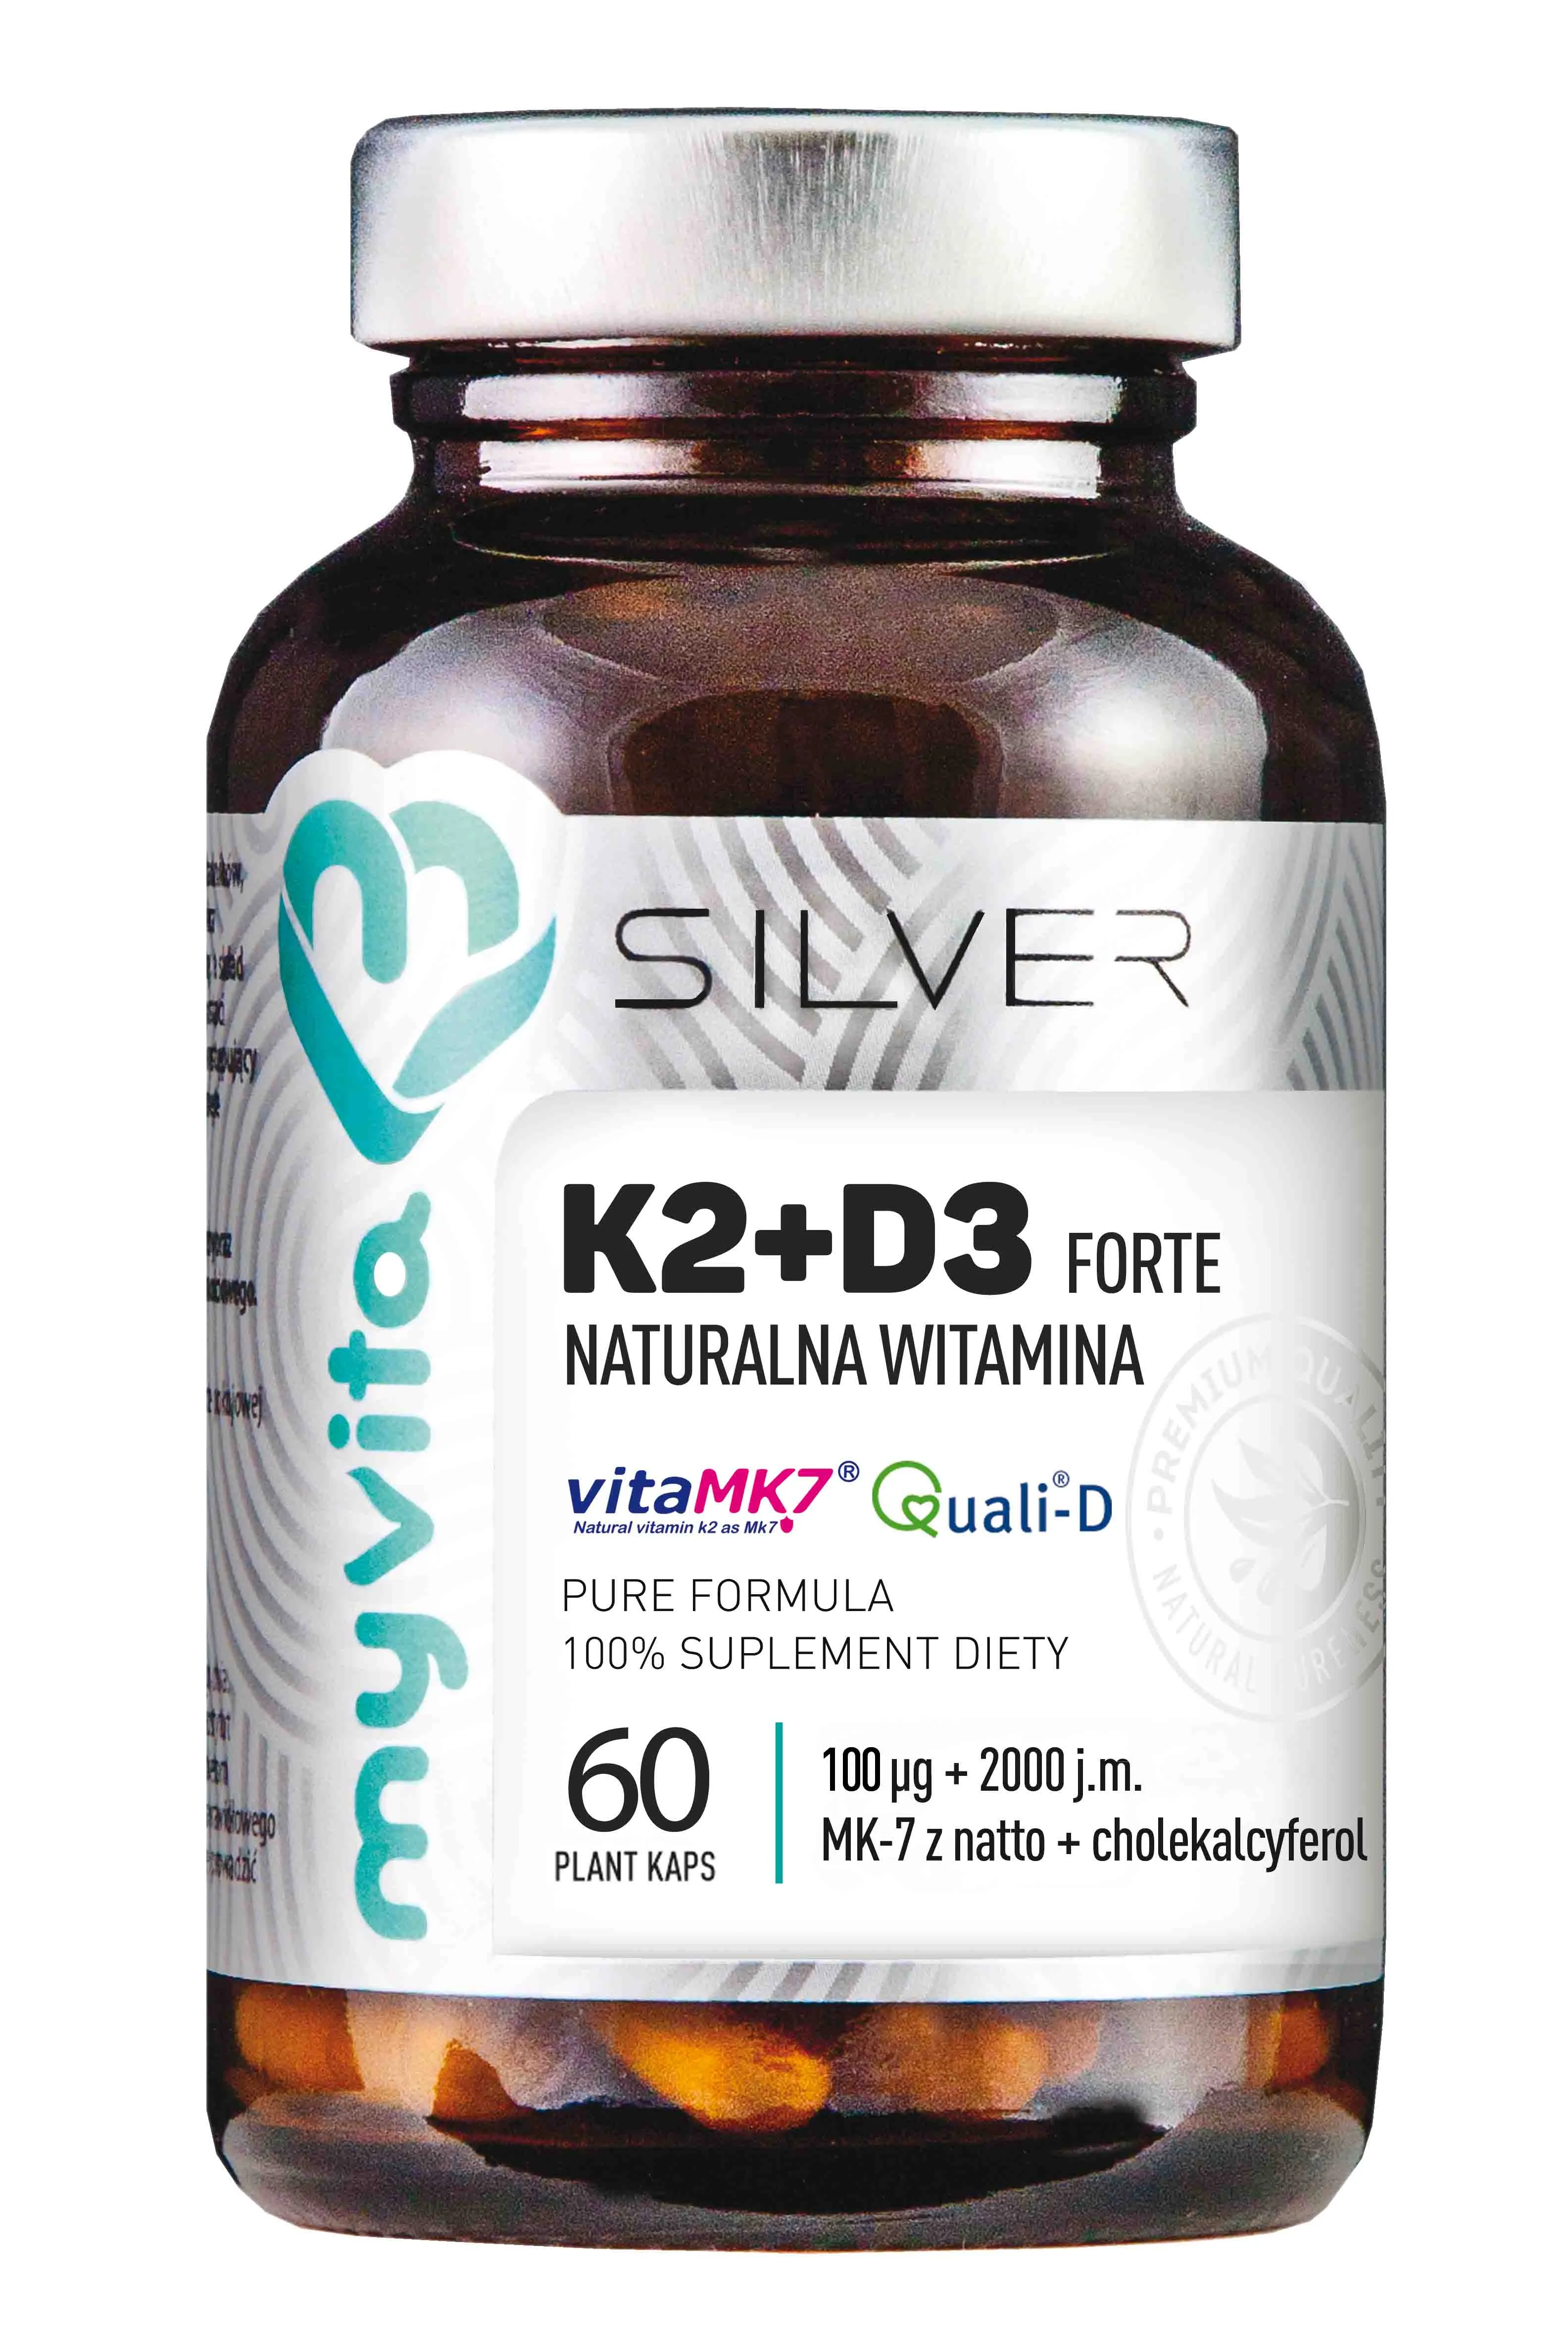 Myvita silver, witamina k2+d3 forte, suplement diety, 120 kapsułek